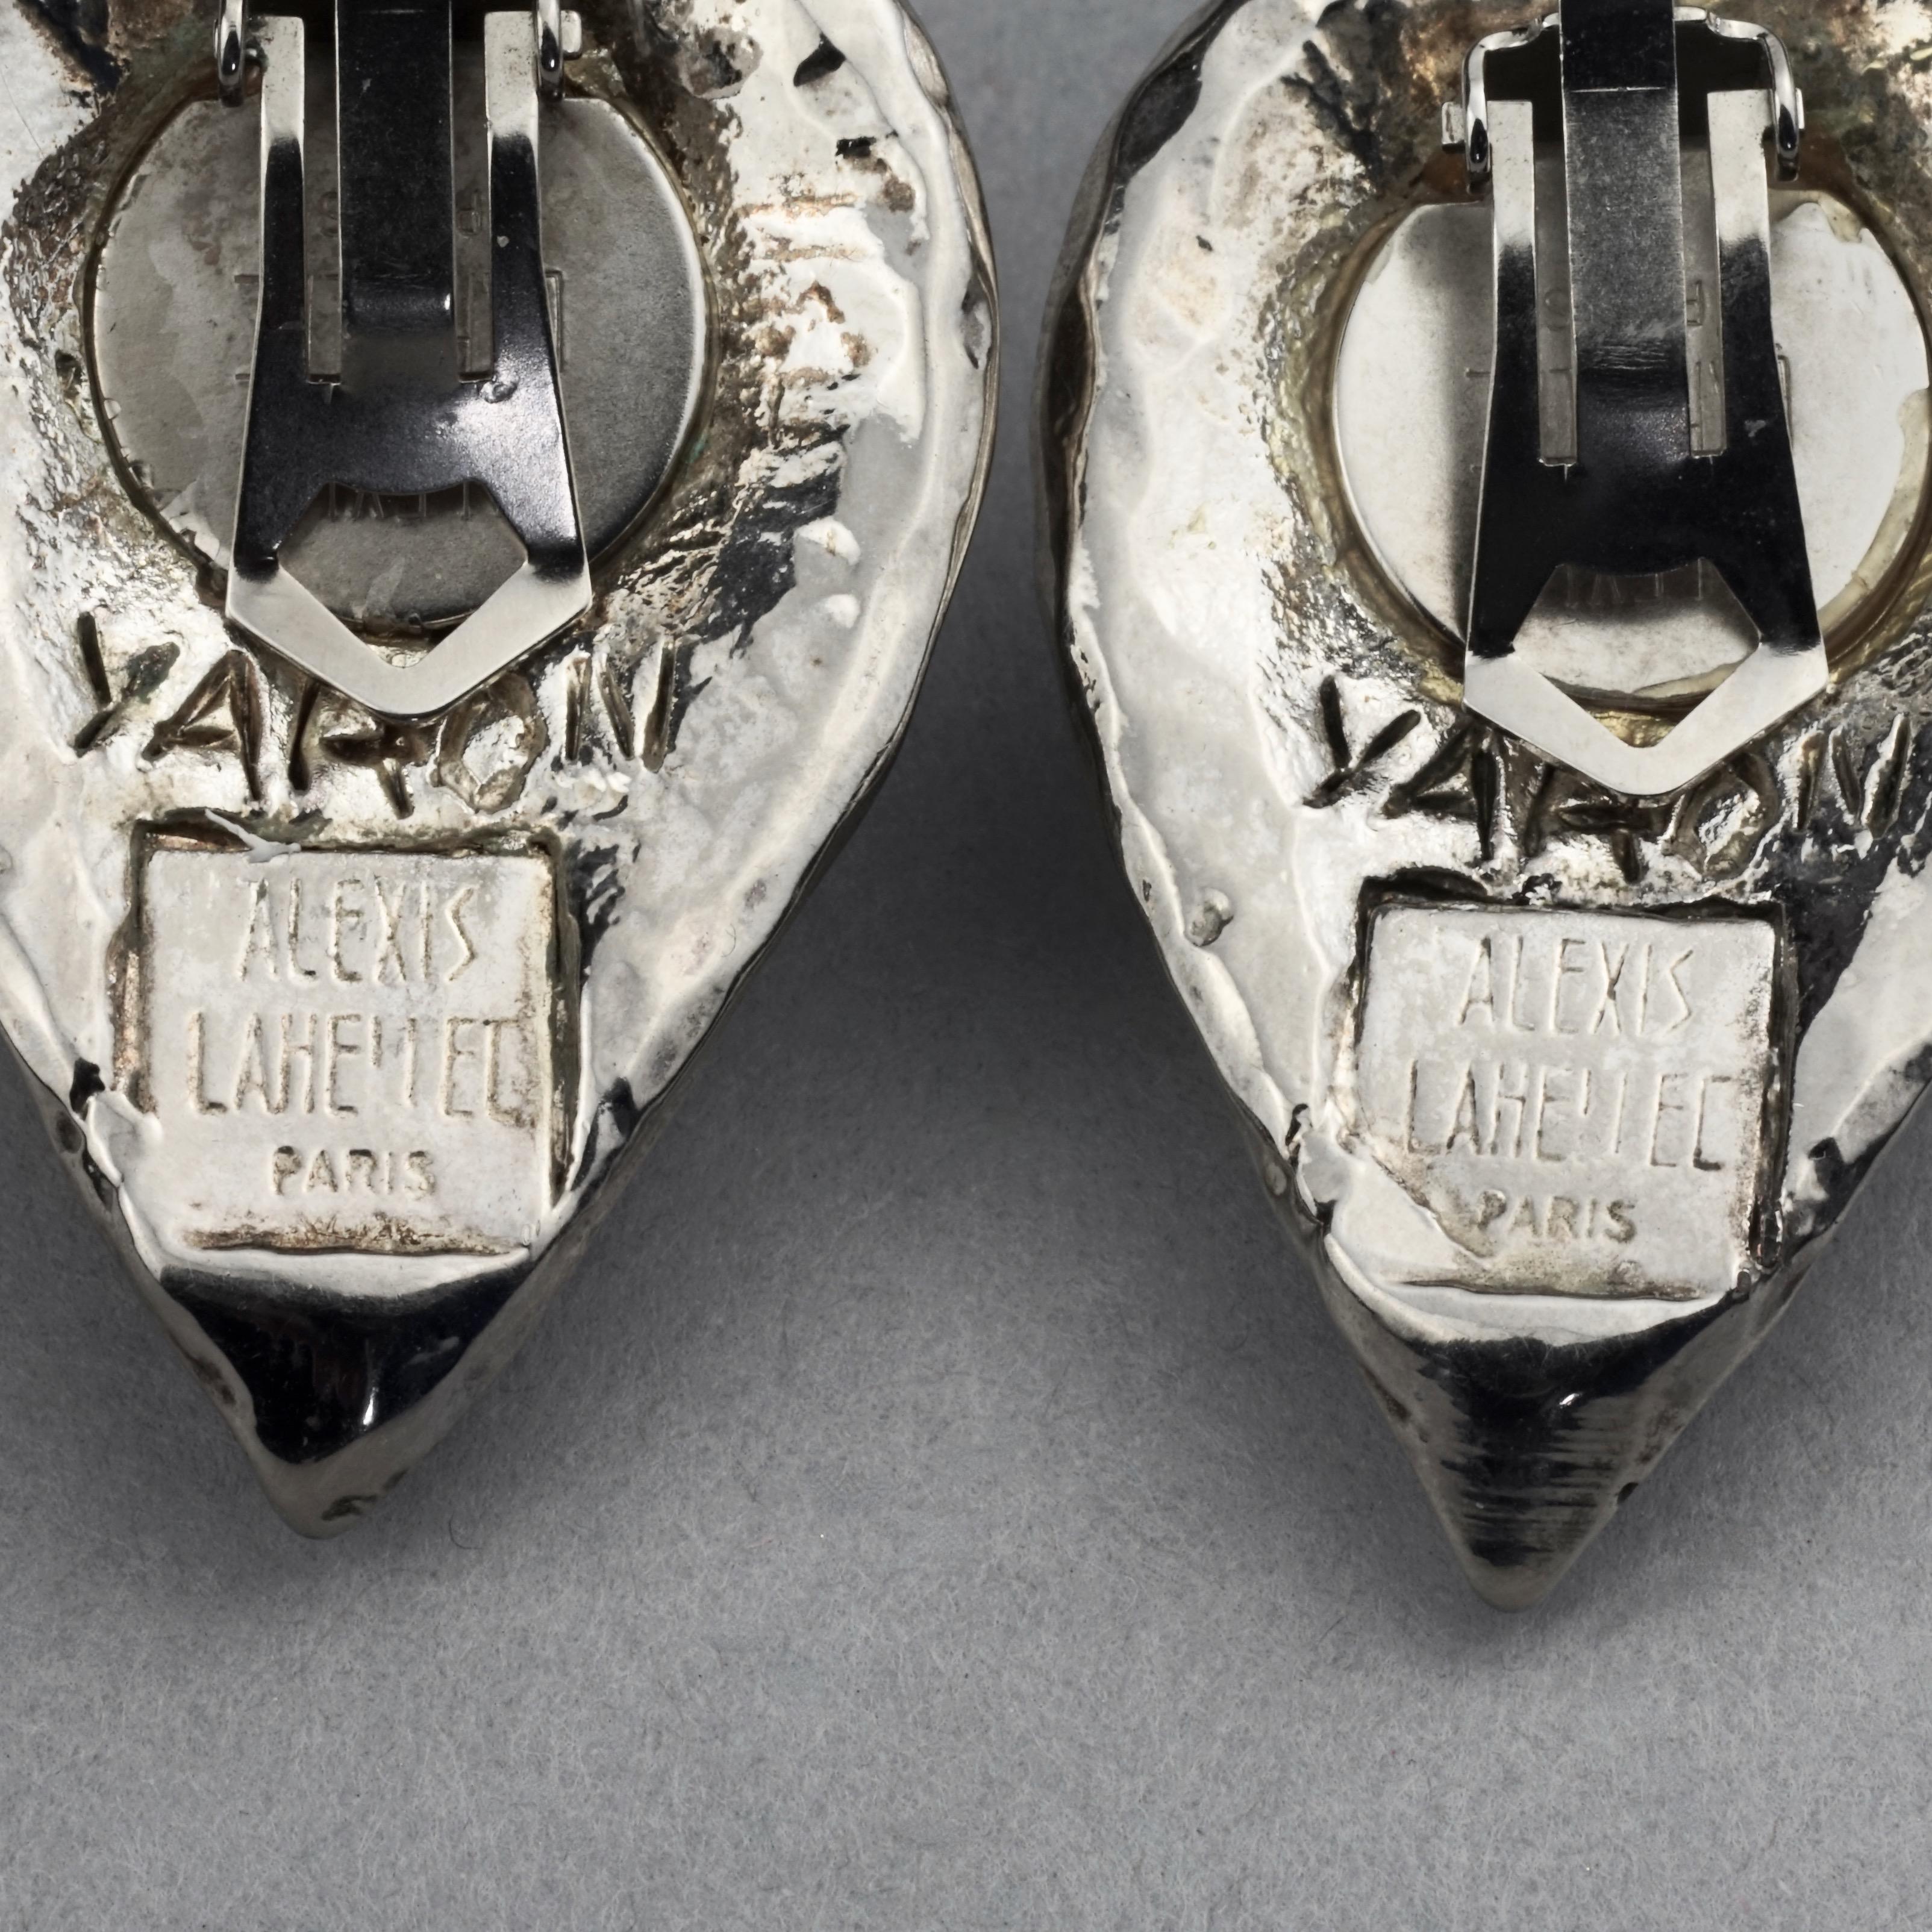 Vintage Massive ALEXIS LAHELLEC Paris Spermatozoa Fertility Silver Earrings 7